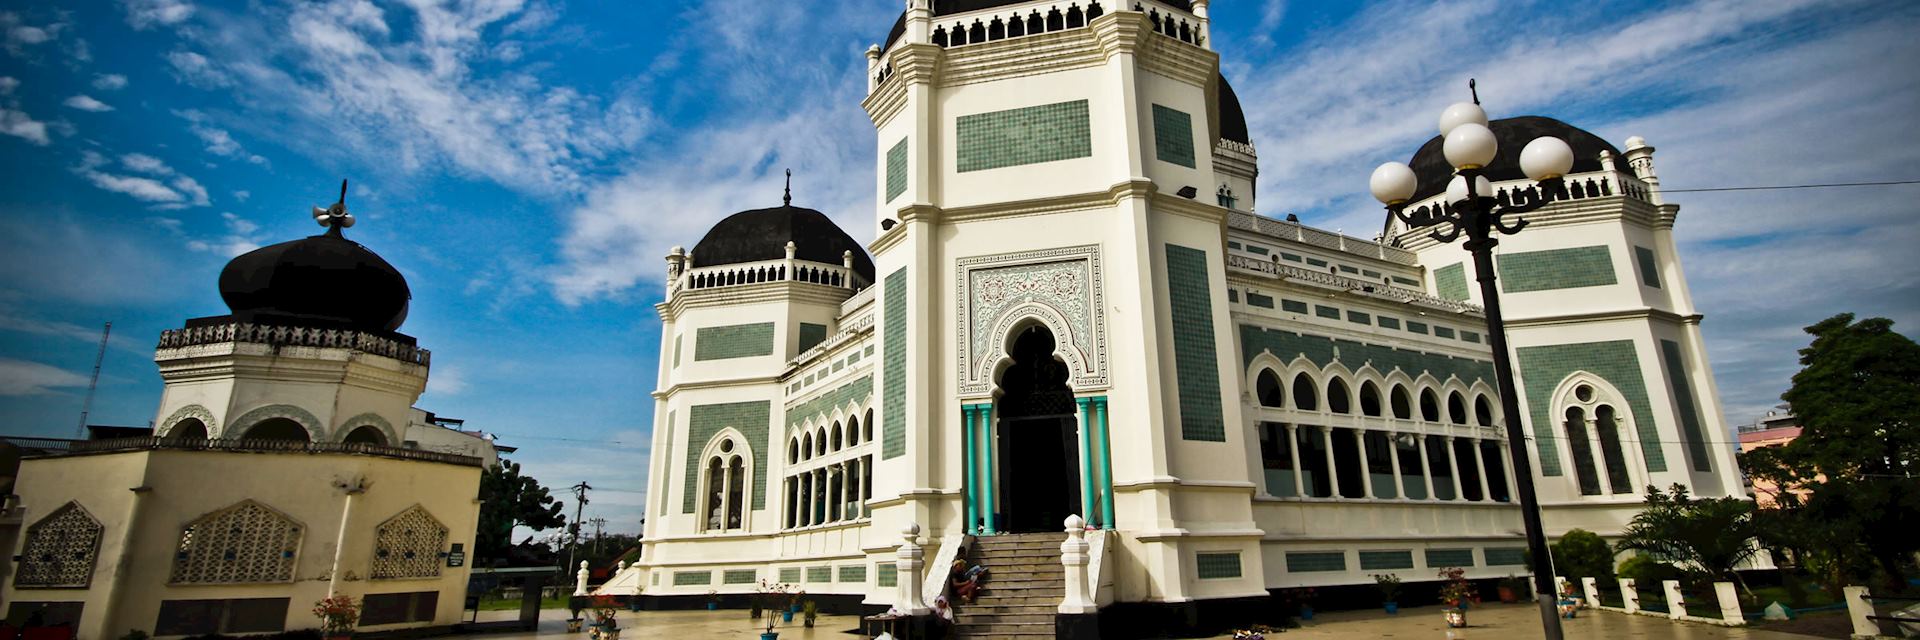 Masjid Raya Al Mashun mosque, Medan